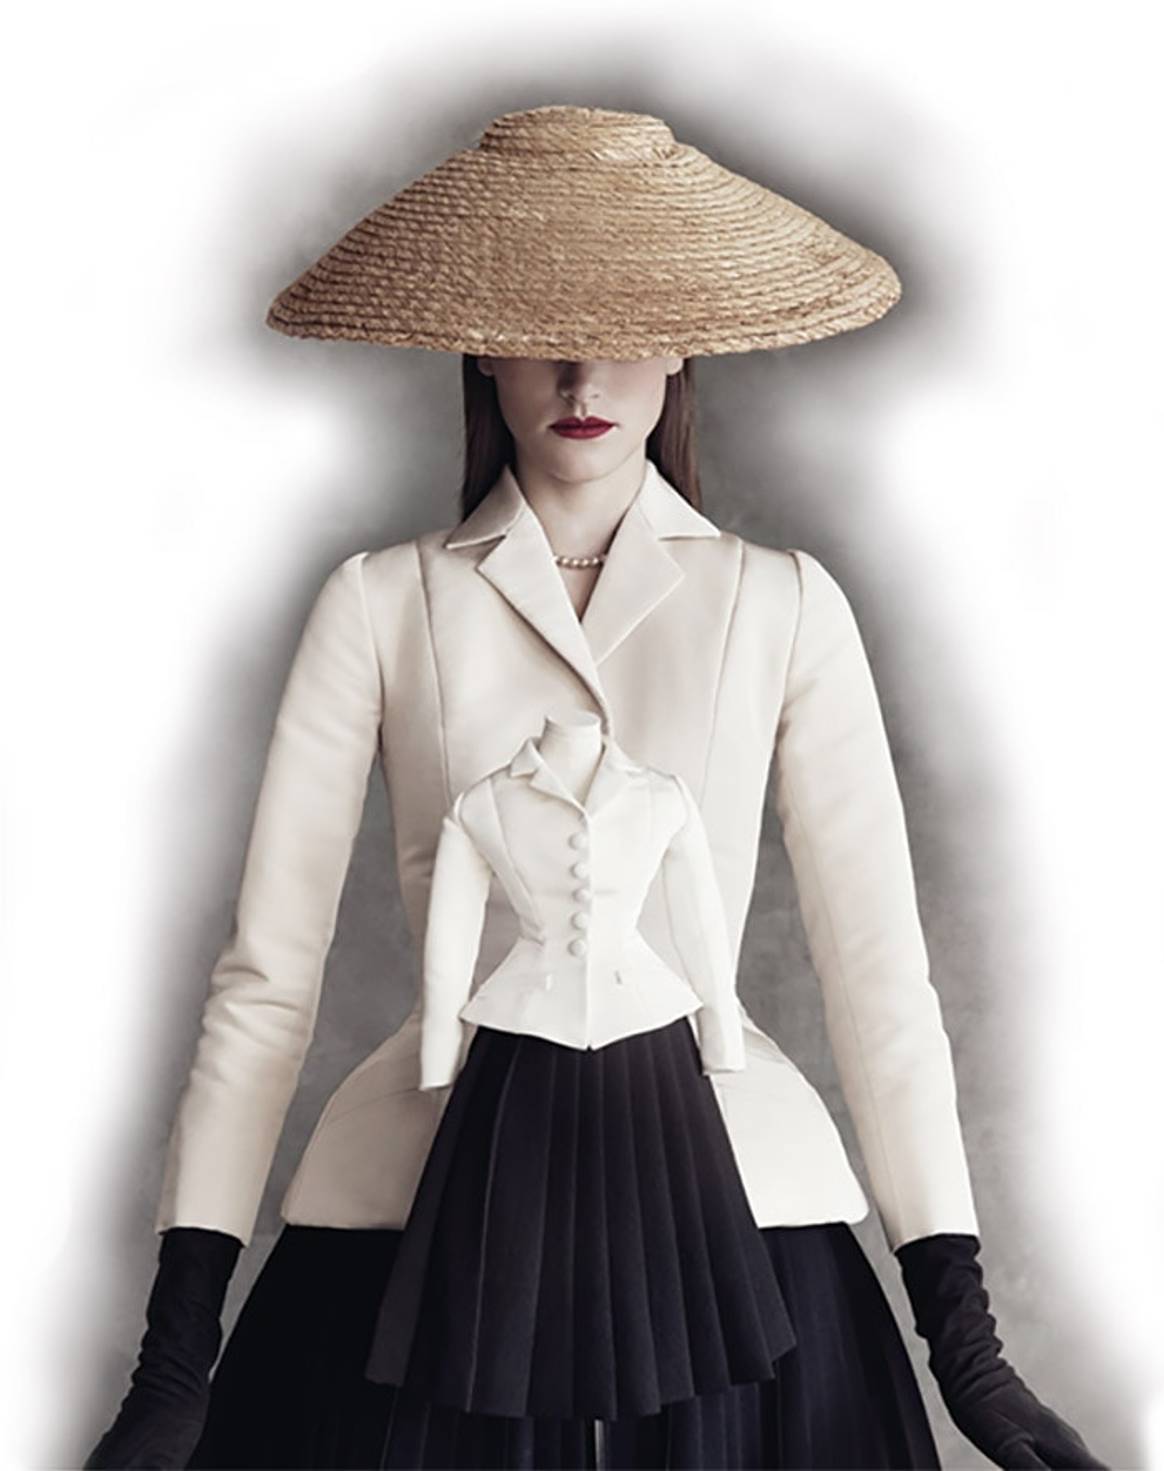 El "Nuevo Look": Lo que llevo a Dior a hacer la contratación que romperá barreras